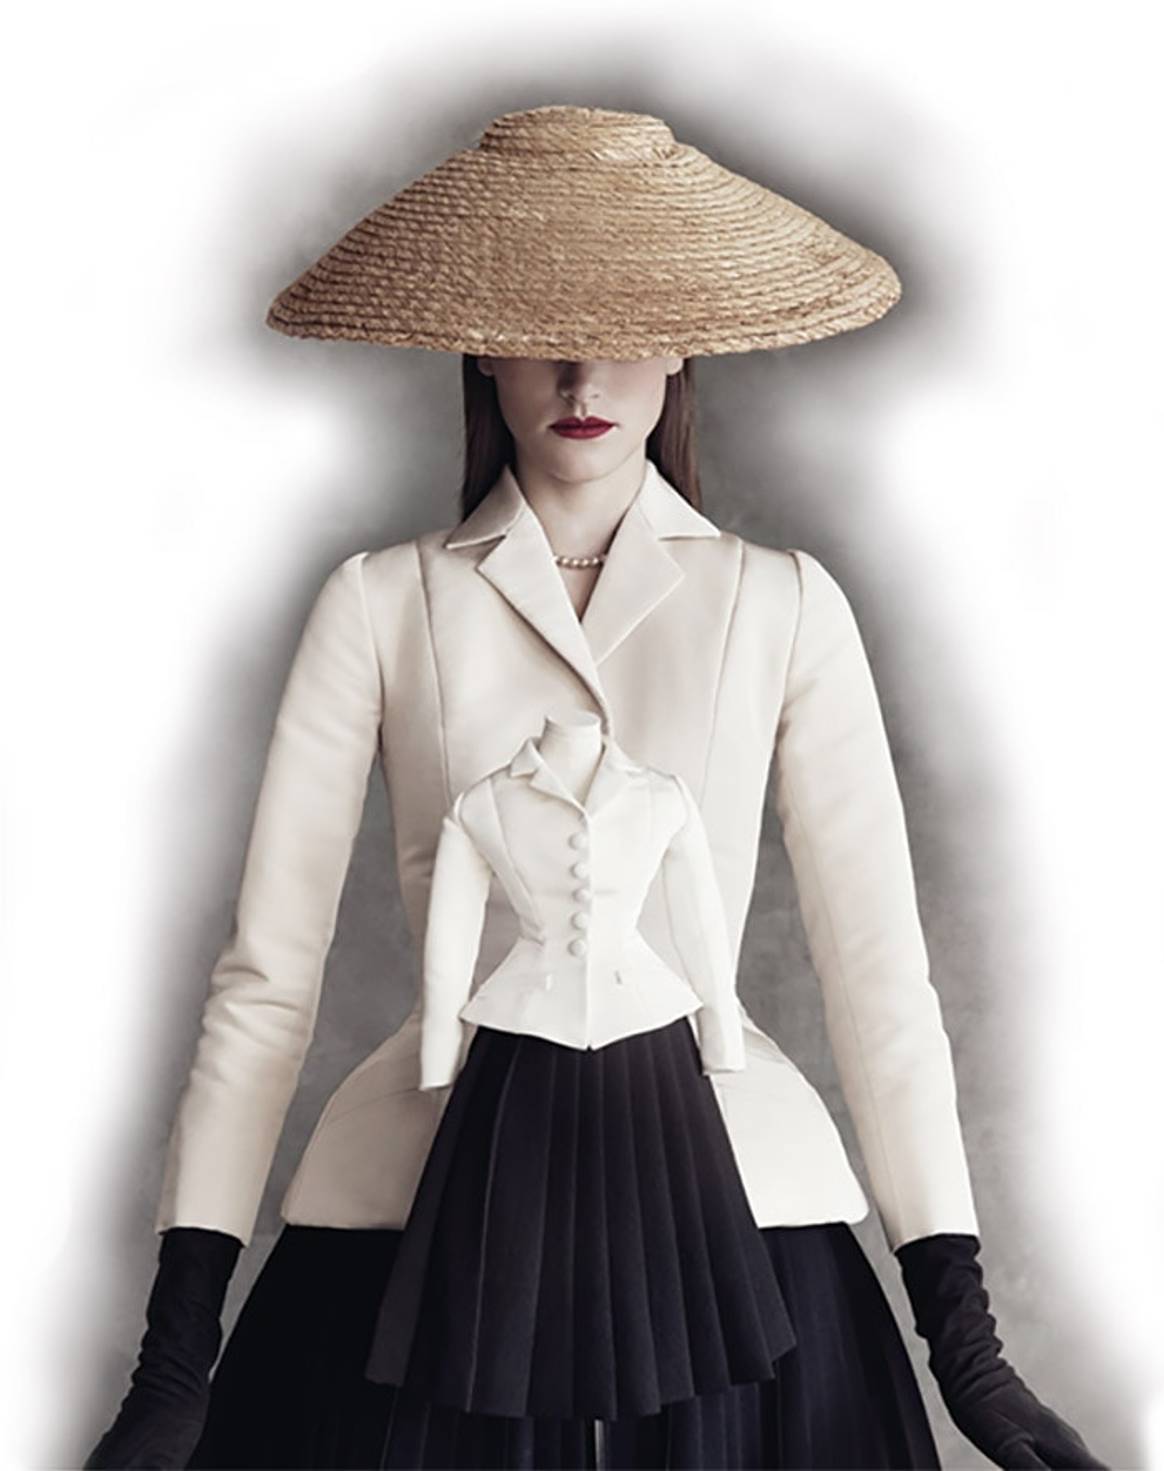 El "Nuevo Look": Lo que llevo a Dior a hacer la contratación que romperá barreras